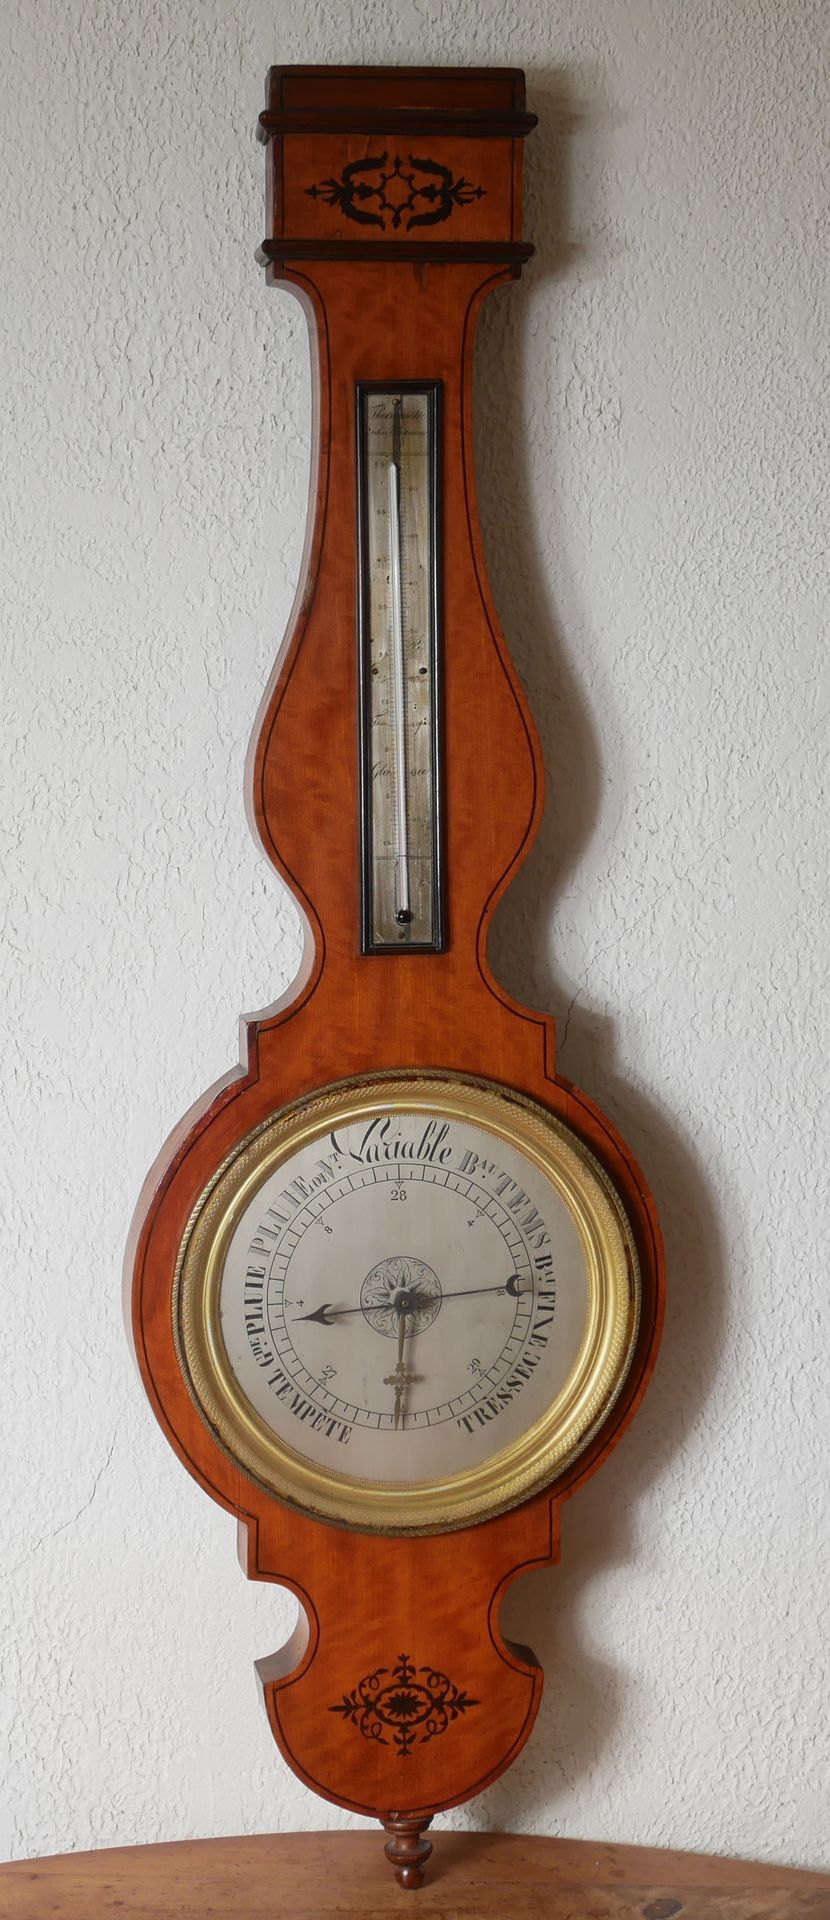 Null Baromètre-thermomètre en bois de placage

H : 103 cm. (éclats, manques)